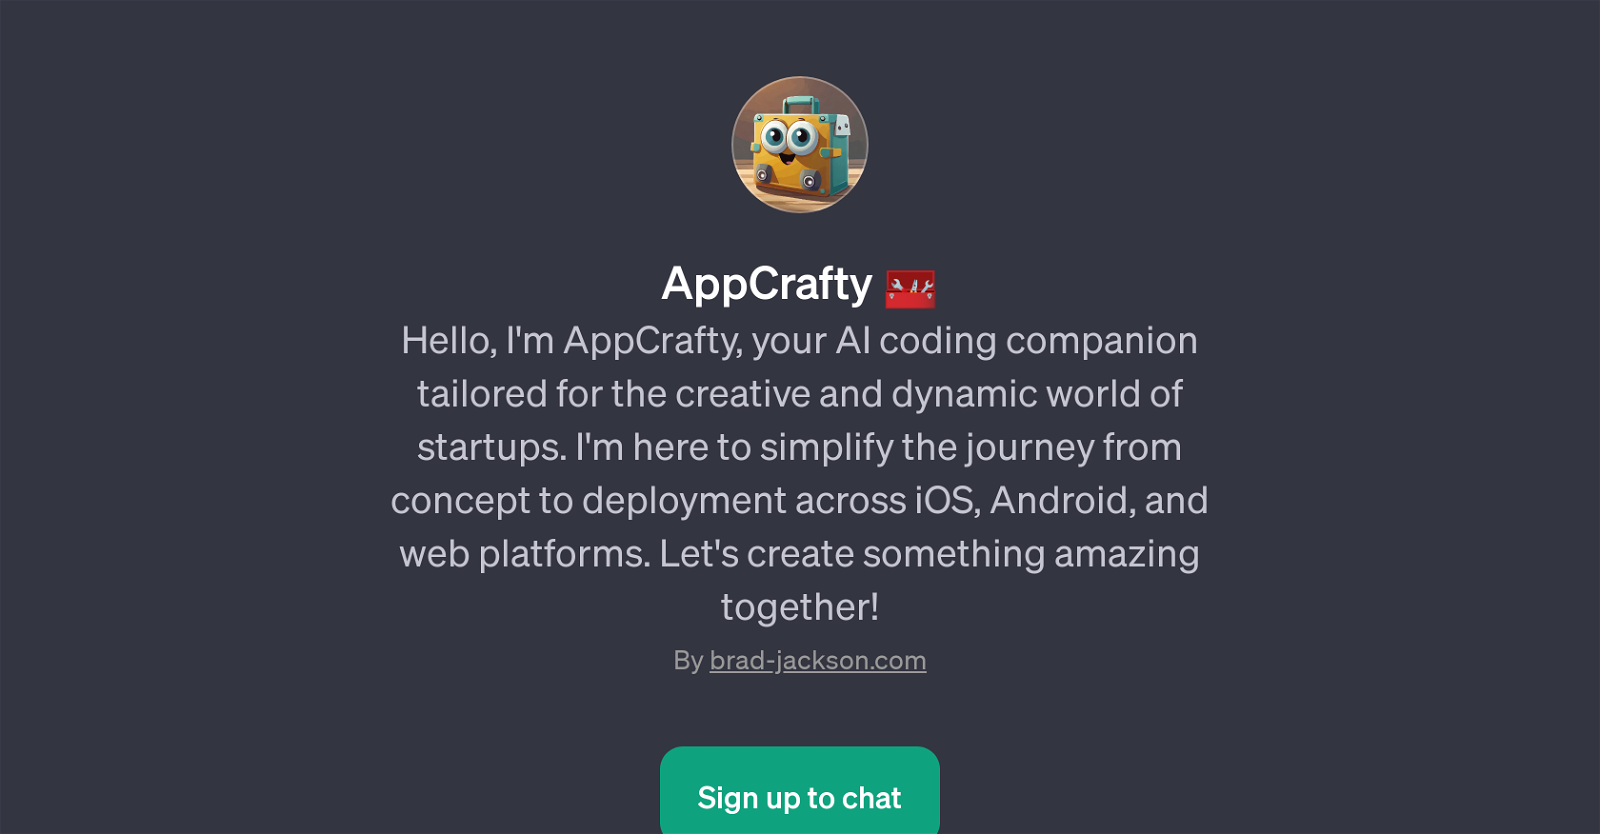 AppCrafty website